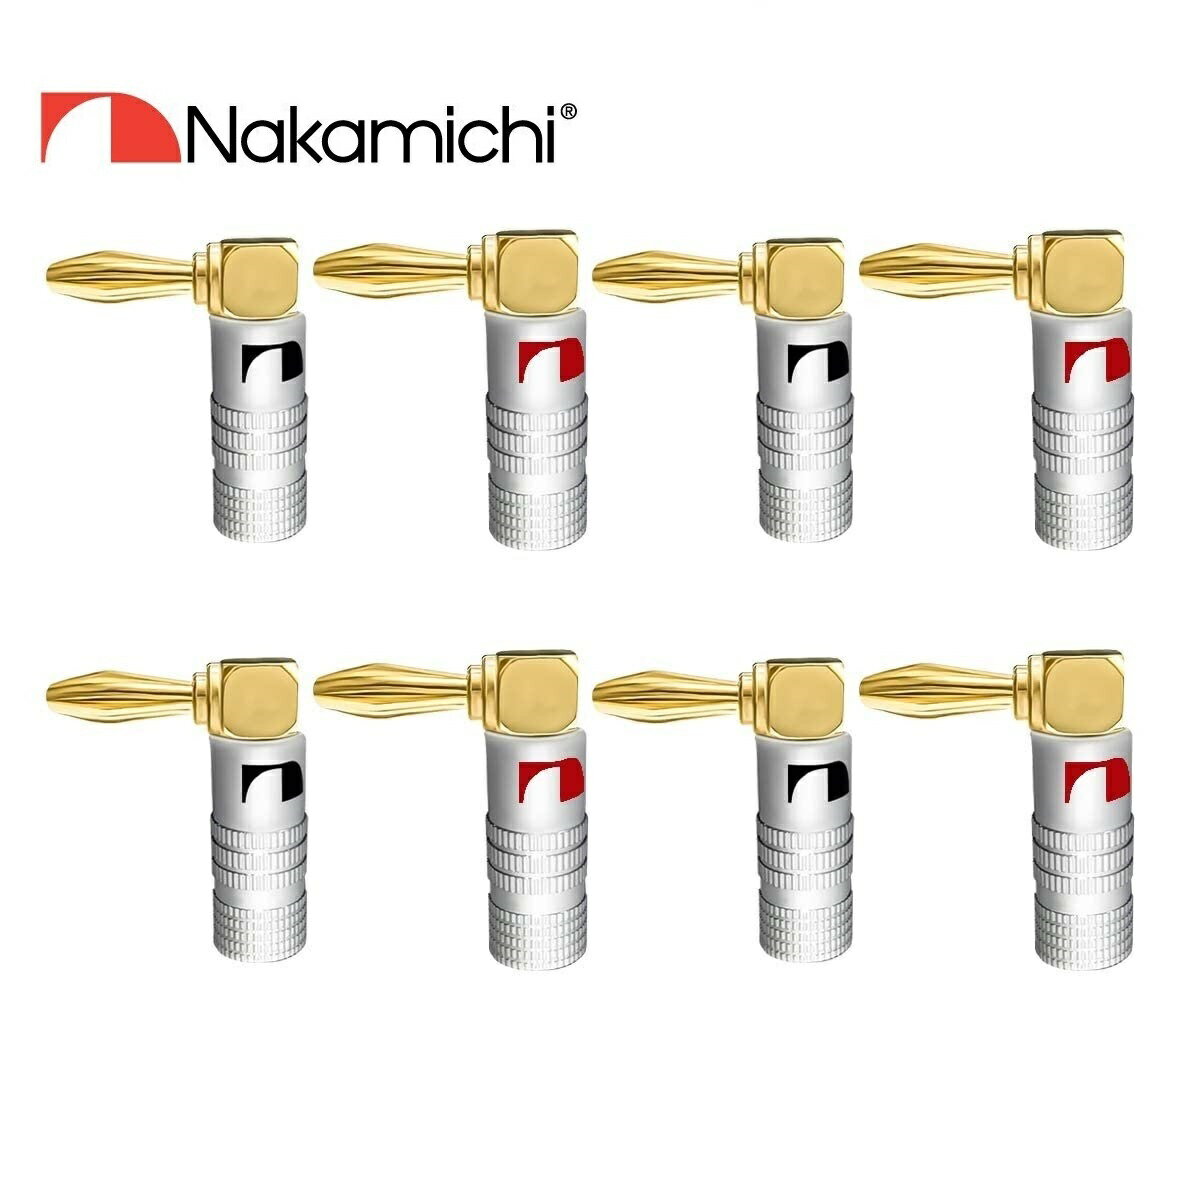 Nakamichi ナカミチ バナナプラグ L型 24K金メッキ アルミメタルシェル スピーカー ケーブル コネクター 8本